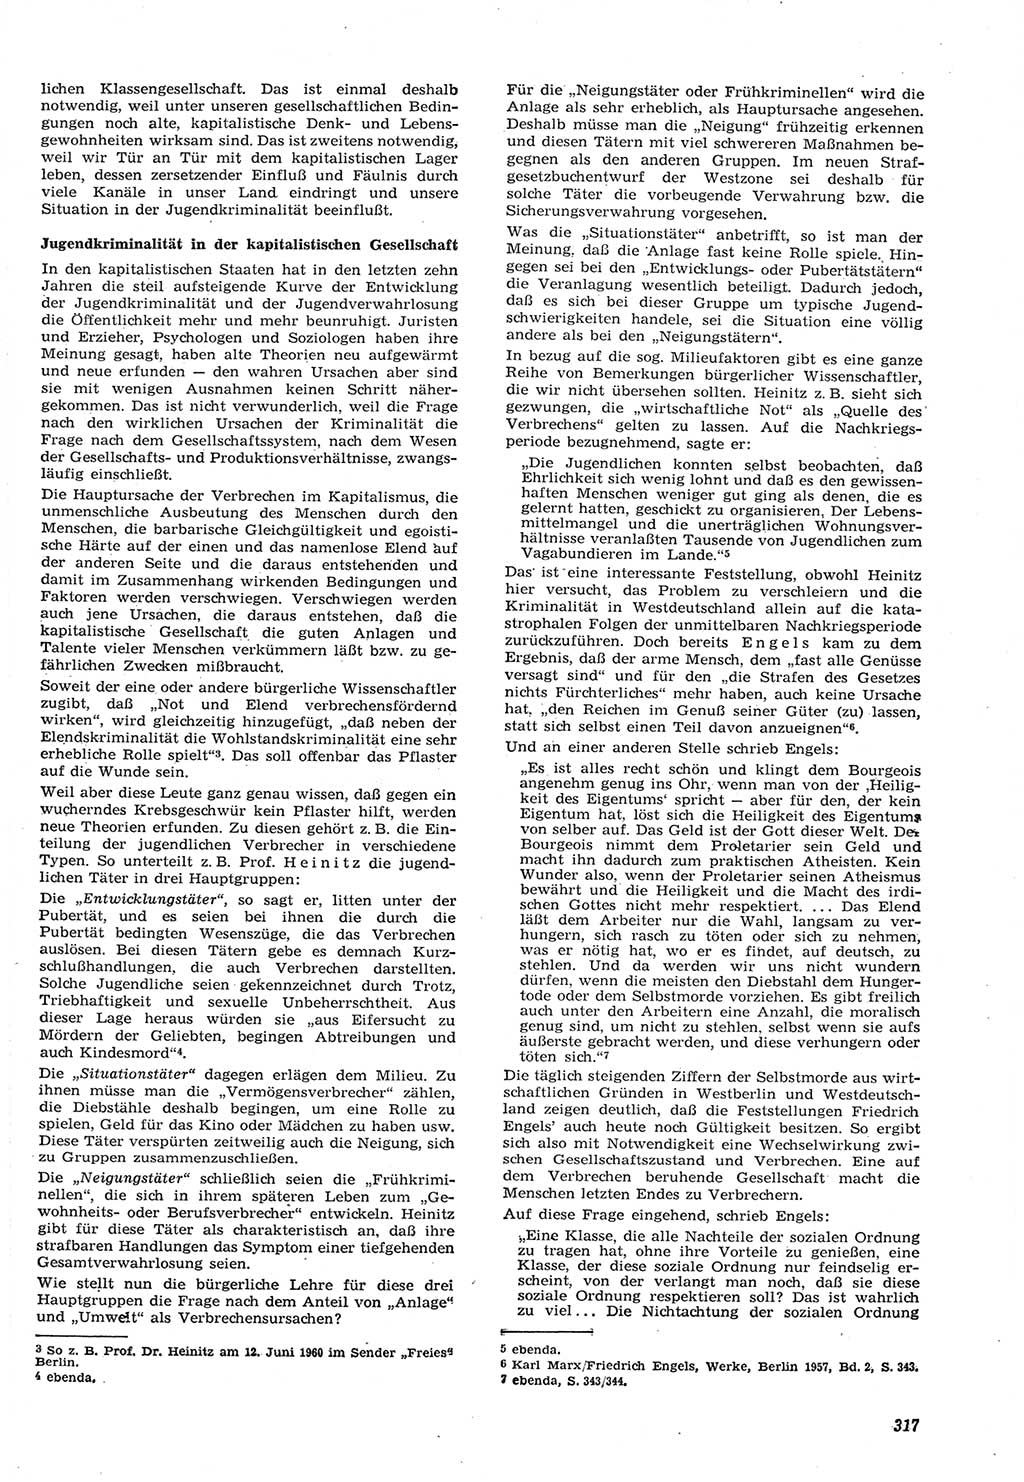 Neue Justiz (NJ), Zeitschrift für Recht und Rechtswissenschaft [Deutsche Demokratische Republik (DDR)], 15. Jahrgang 1961, Seite 317 (NJ DDR 1961, S. 317)